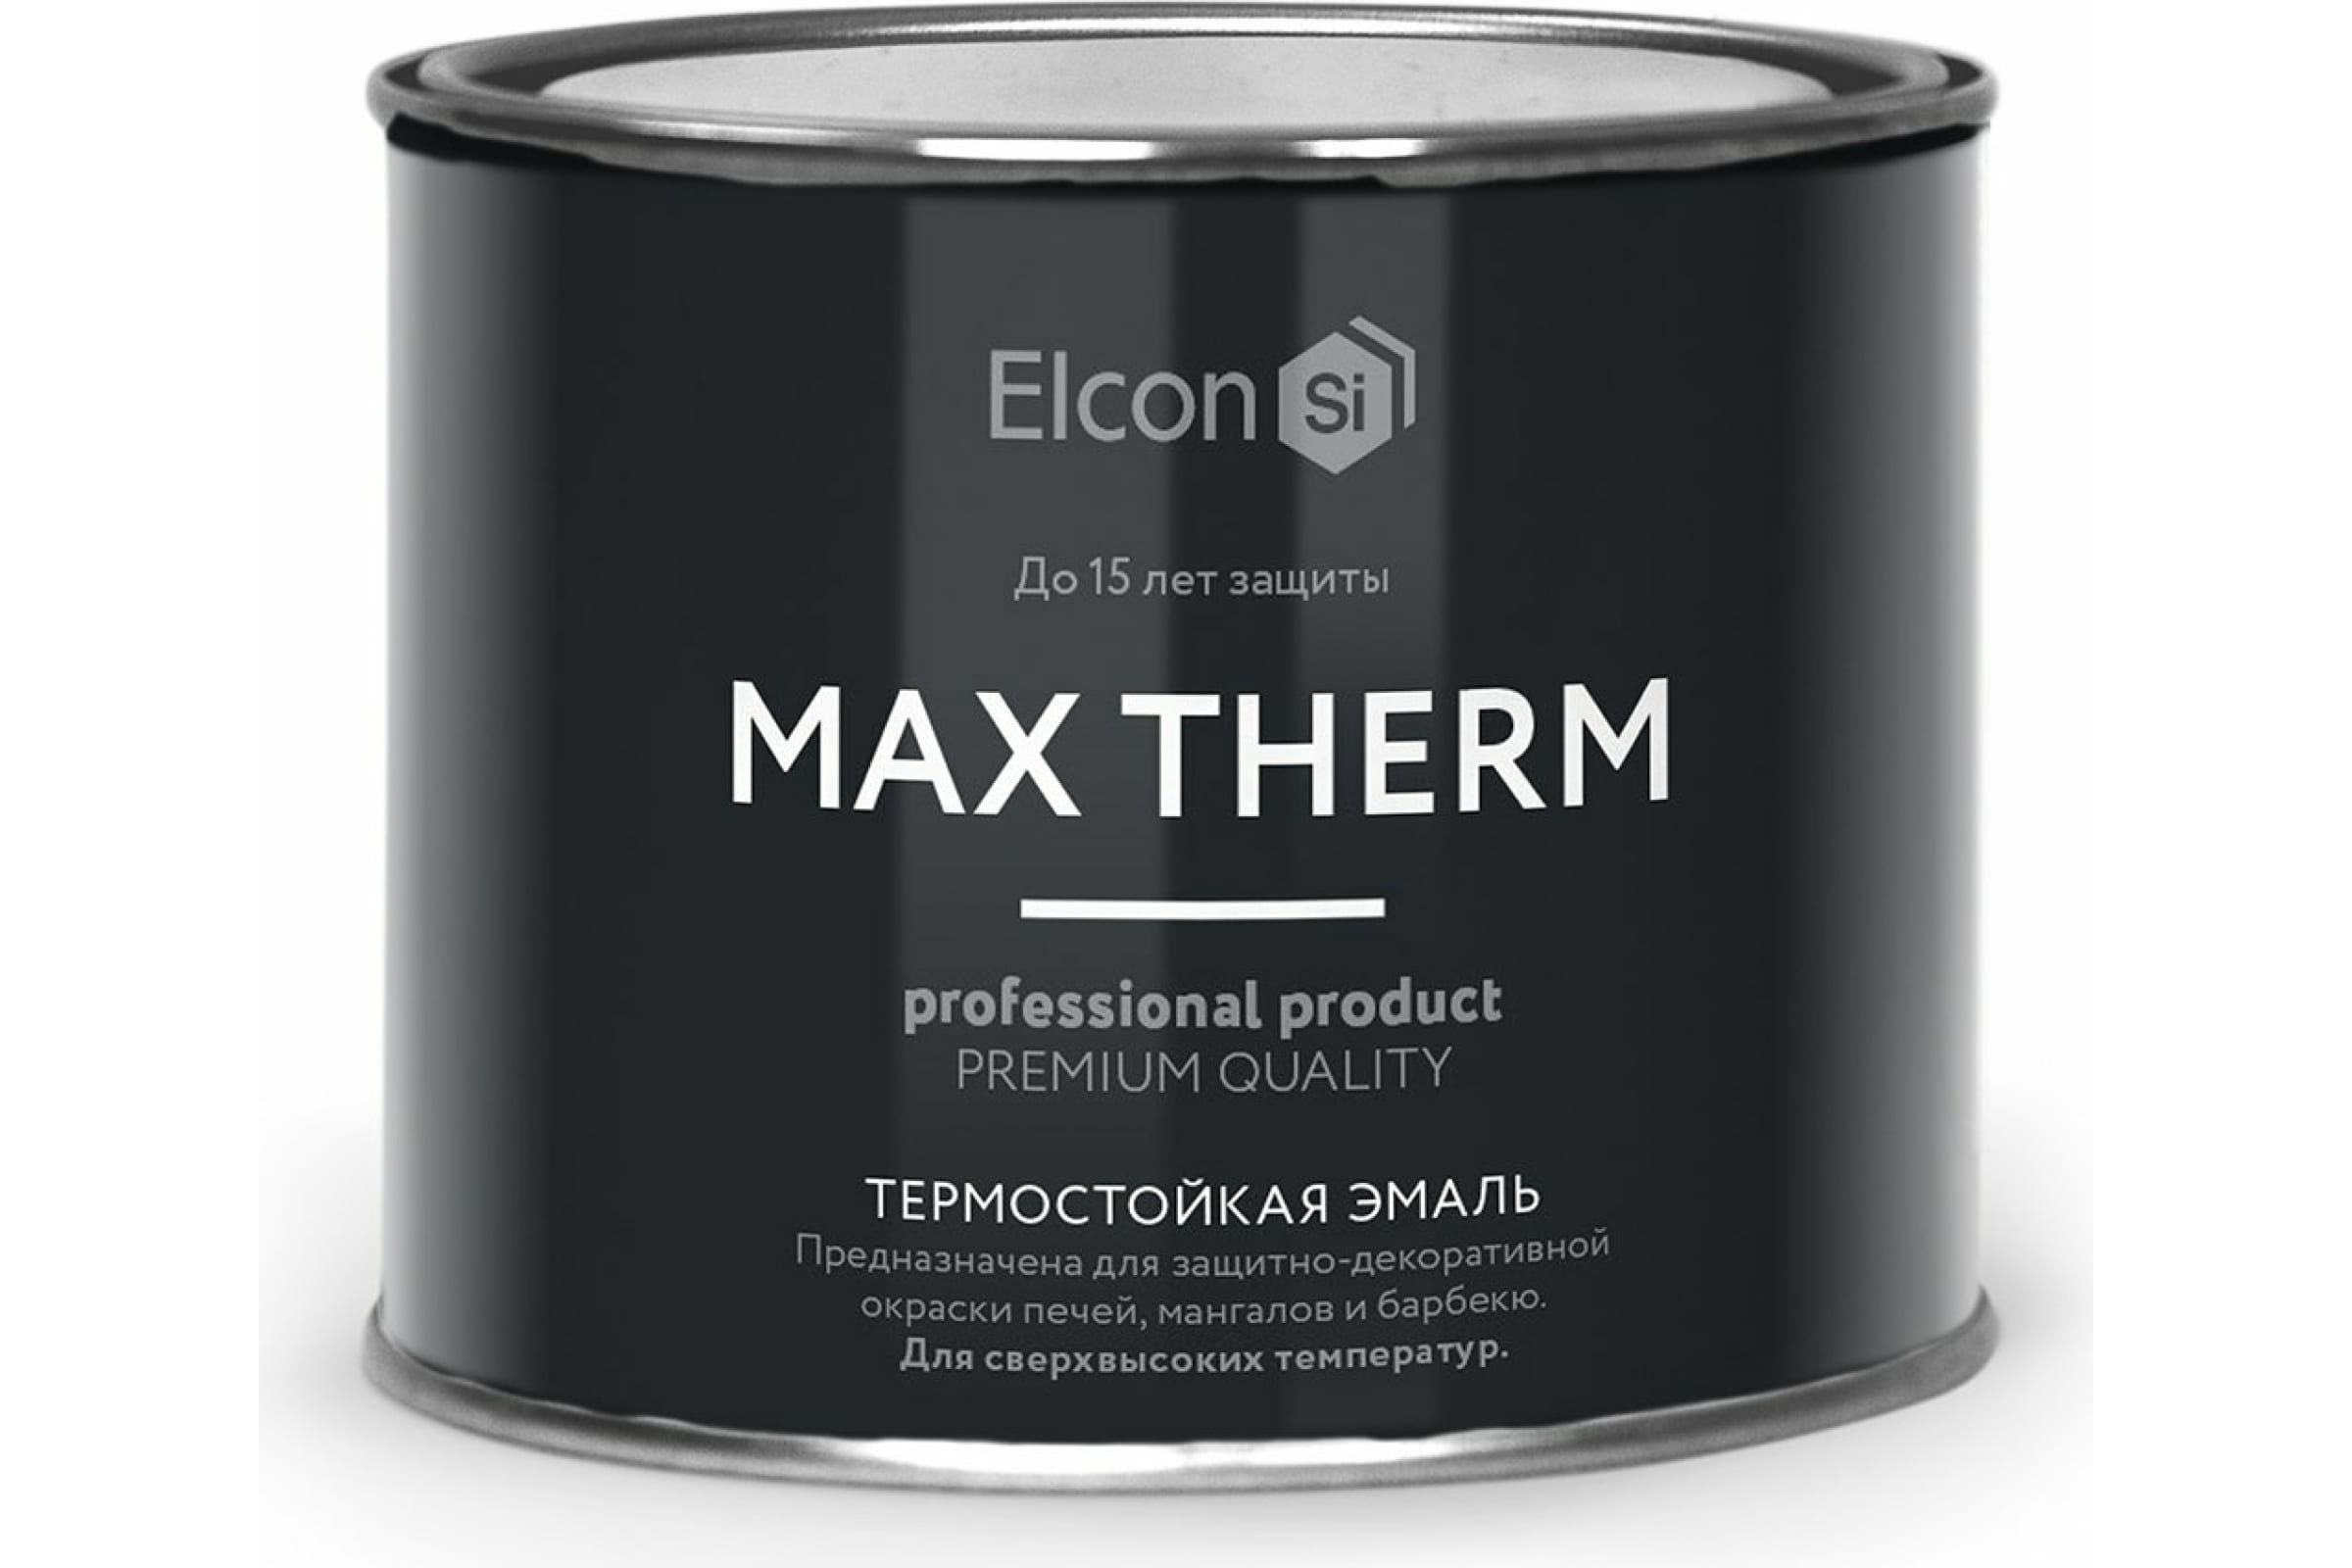 Термостойкая антикоррозионная эмаль Elcon Max Therm до 400 градусов, 0,4 л, ярко-красная термостойкая антикоррозионная эмаль elcon max therm до 400 градусов 0 4 л серая